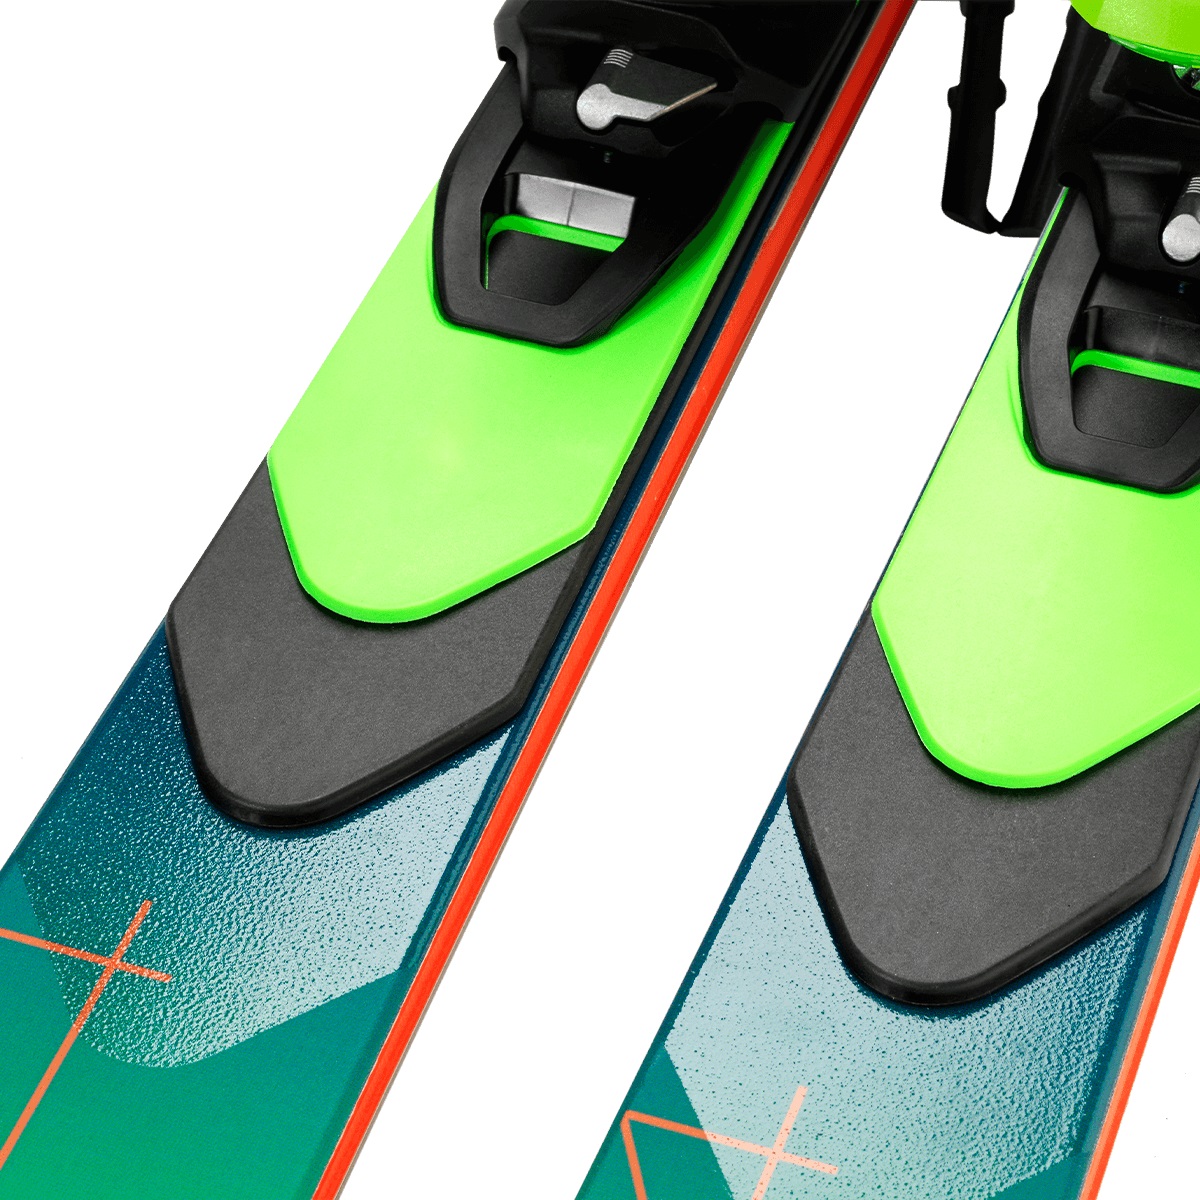 Горные лыжи Elan Scx Fusionx + Emx 12.0 GW Fus. X Blk/Grn 2021, green, 168 см